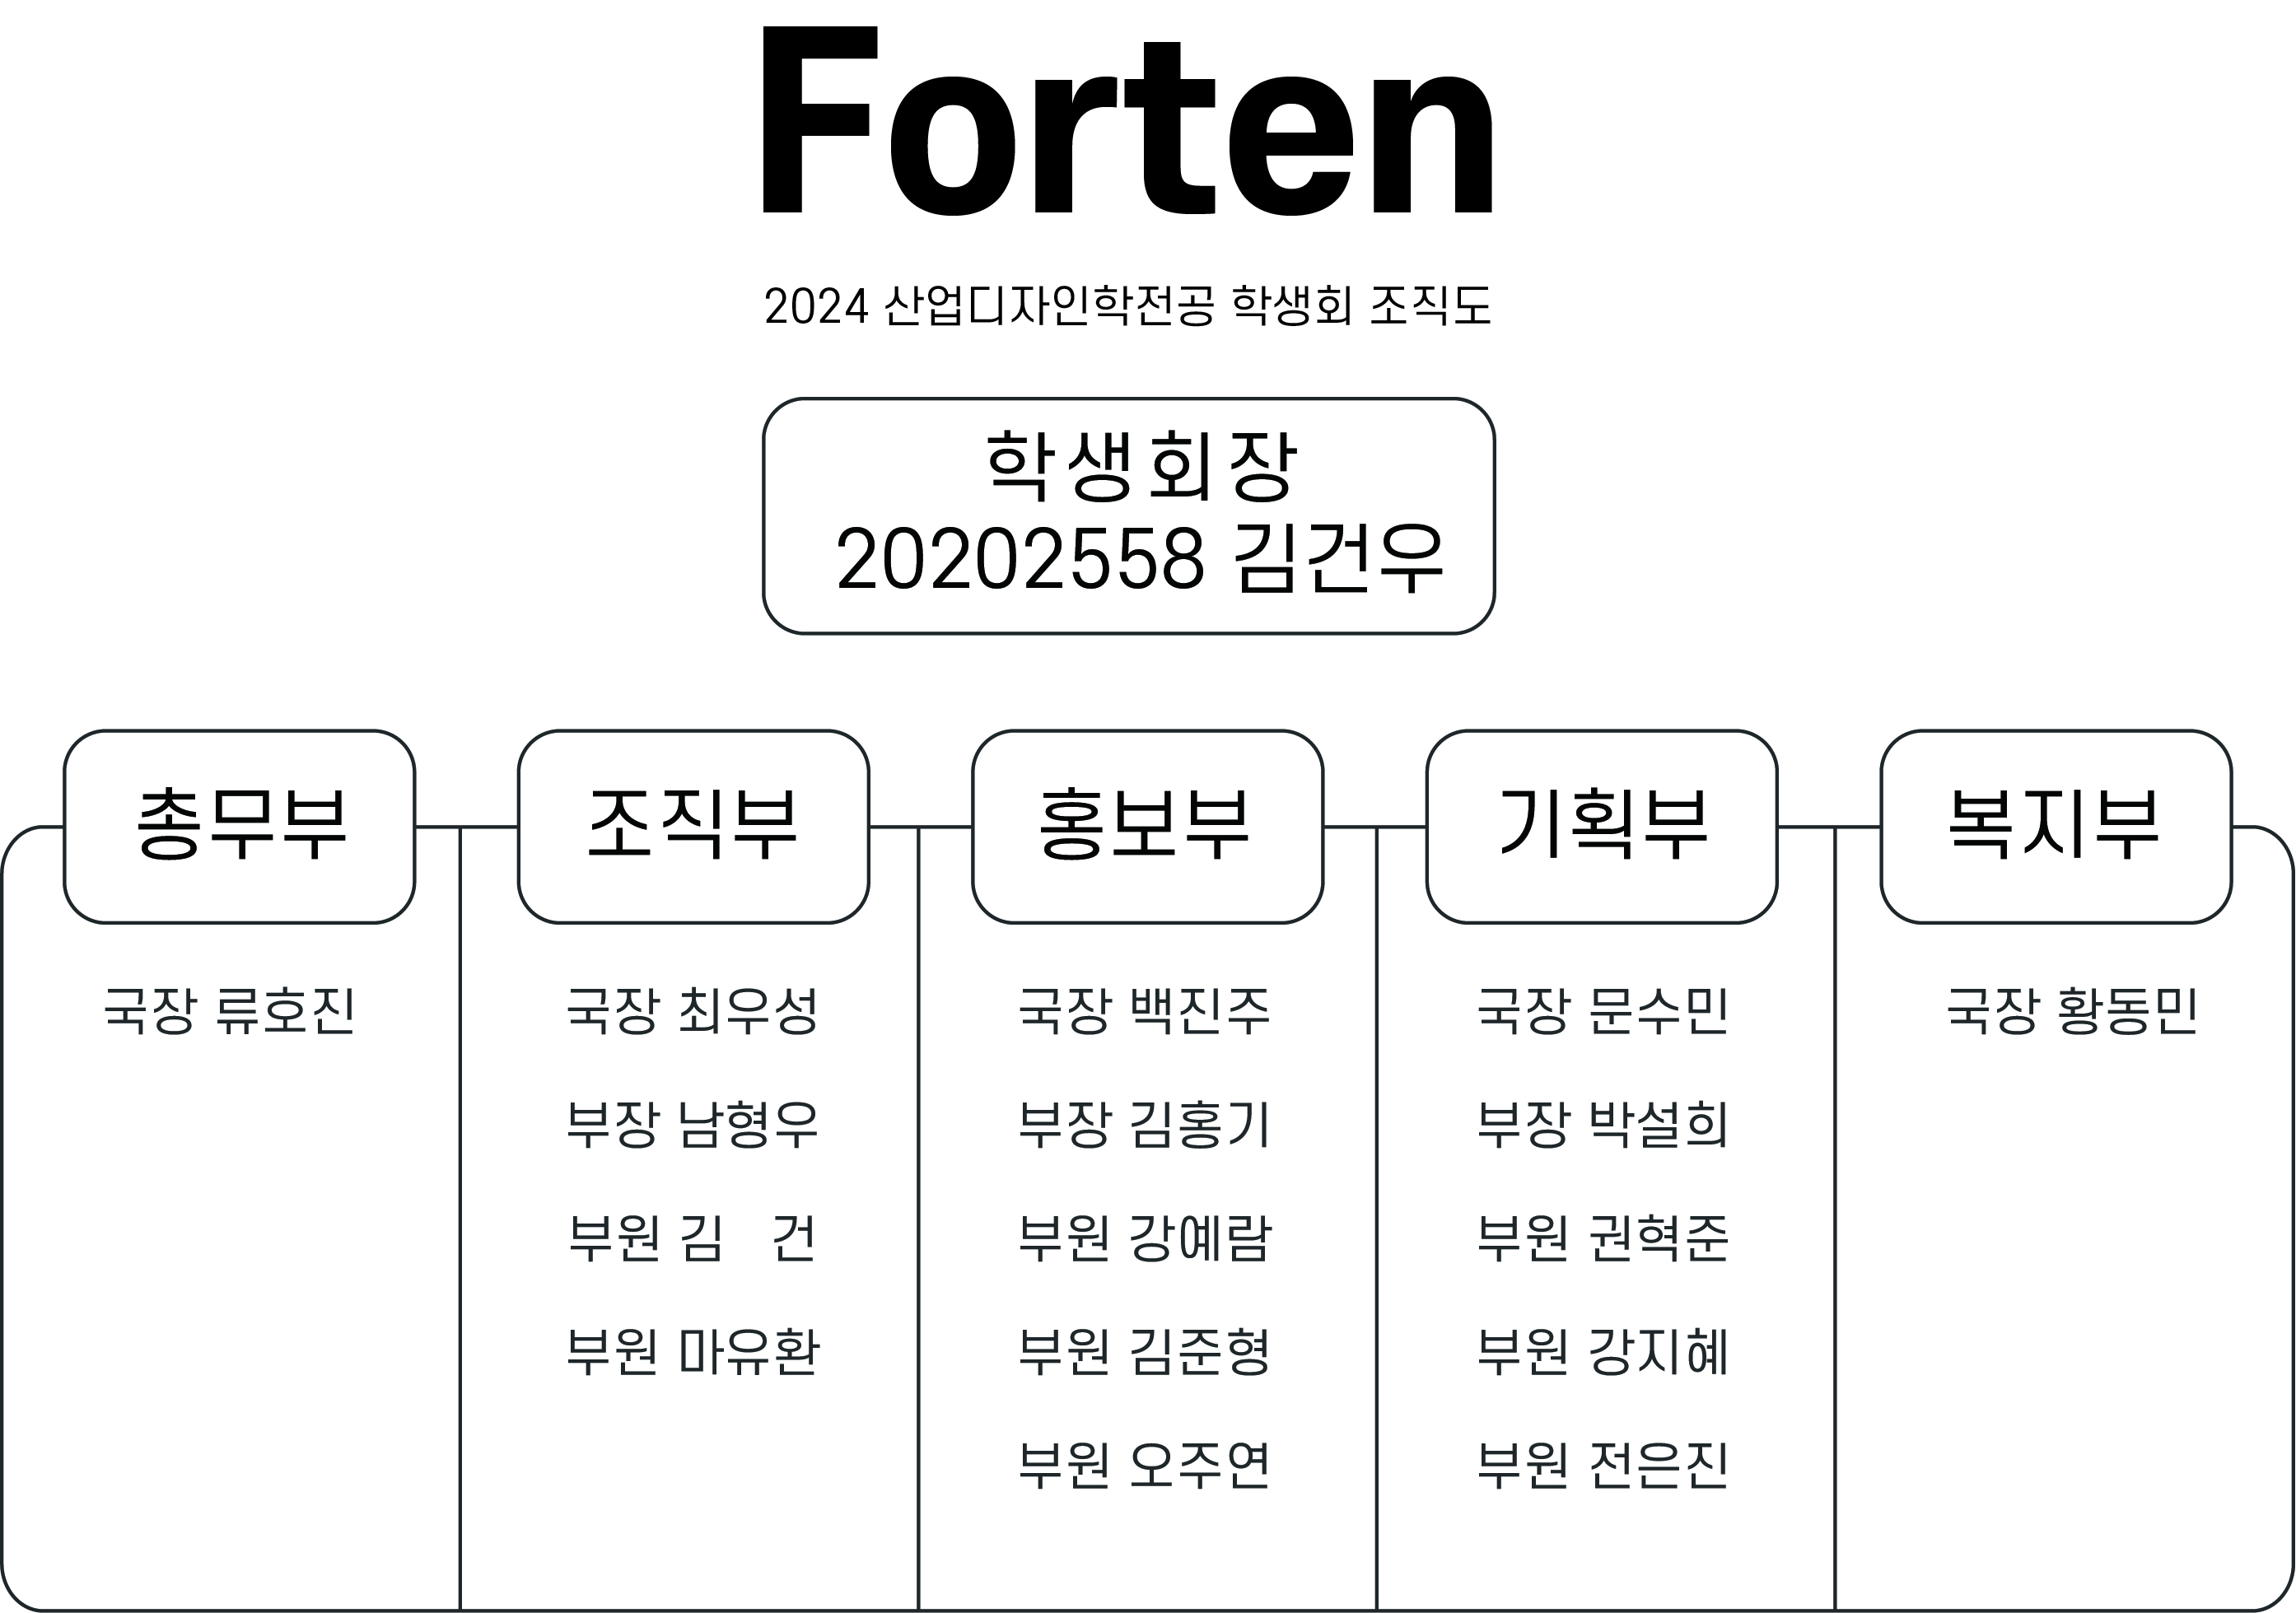 제 40회 산업디자인학전공 학생회 Forten